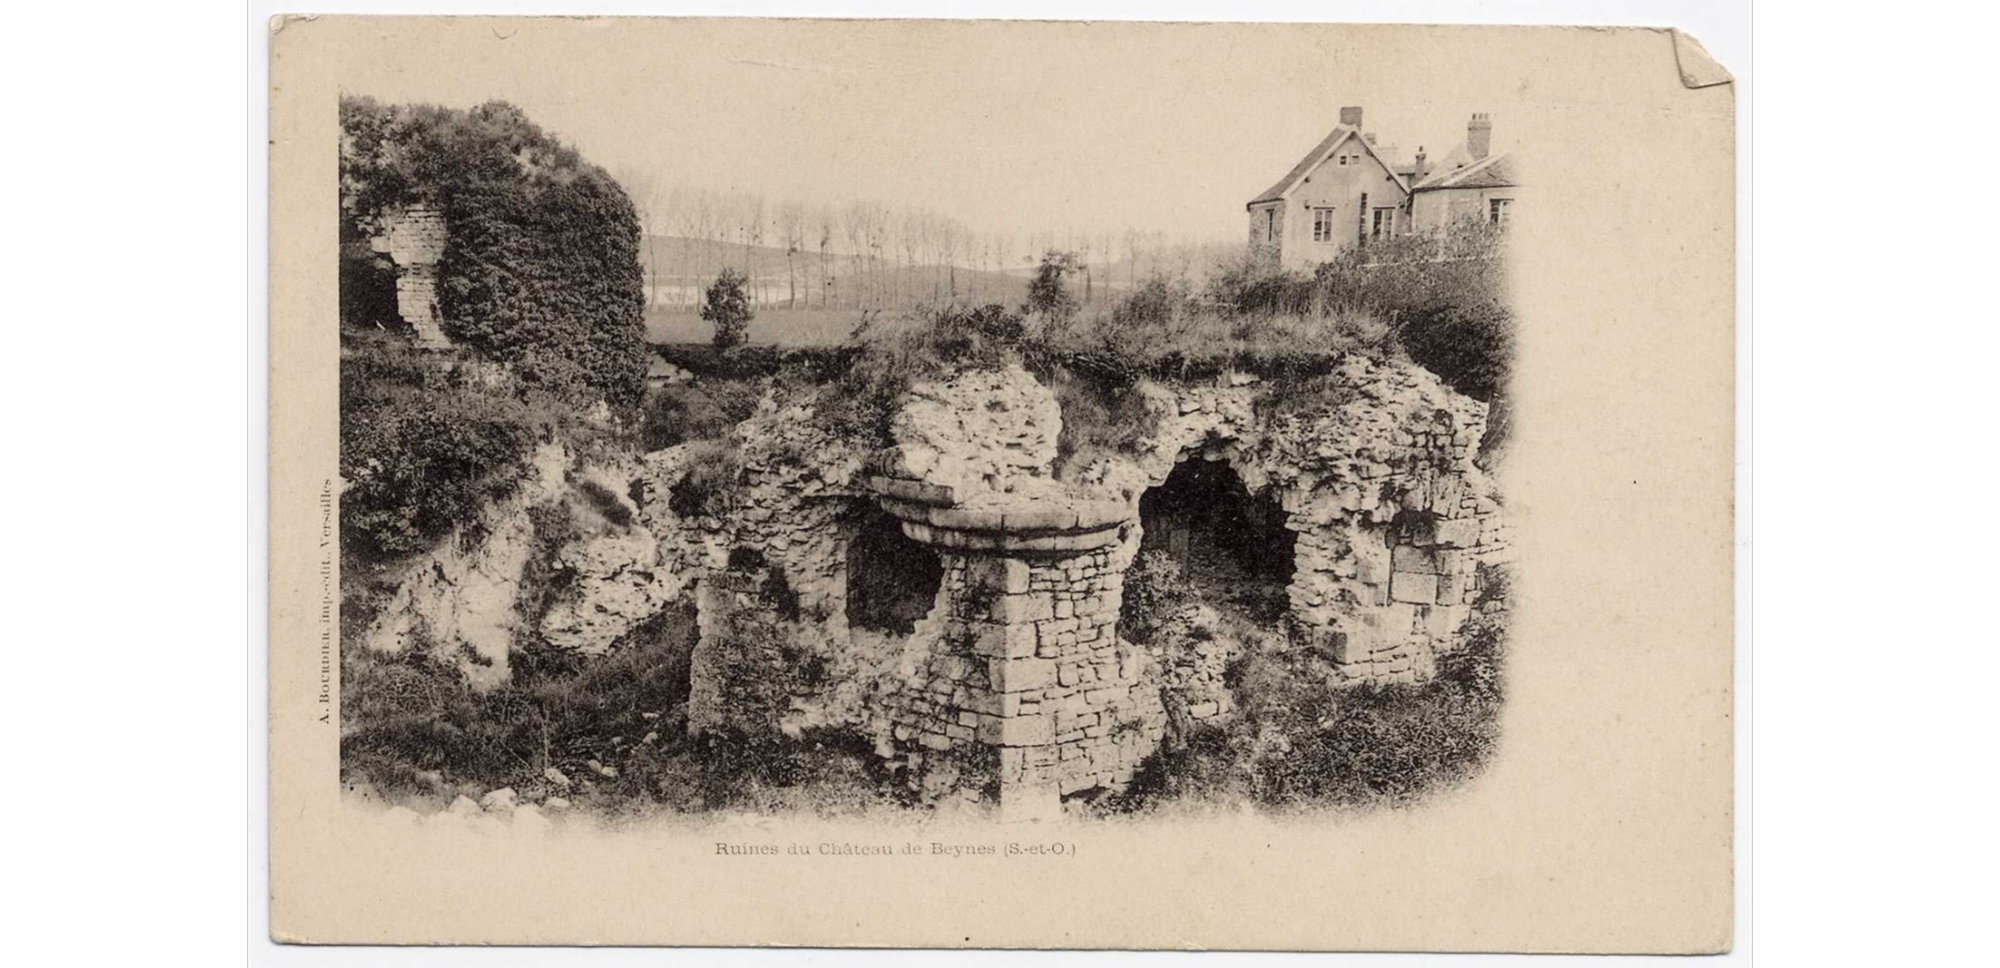 Ruines du château de Beynes (S.et O.) - 1910-19